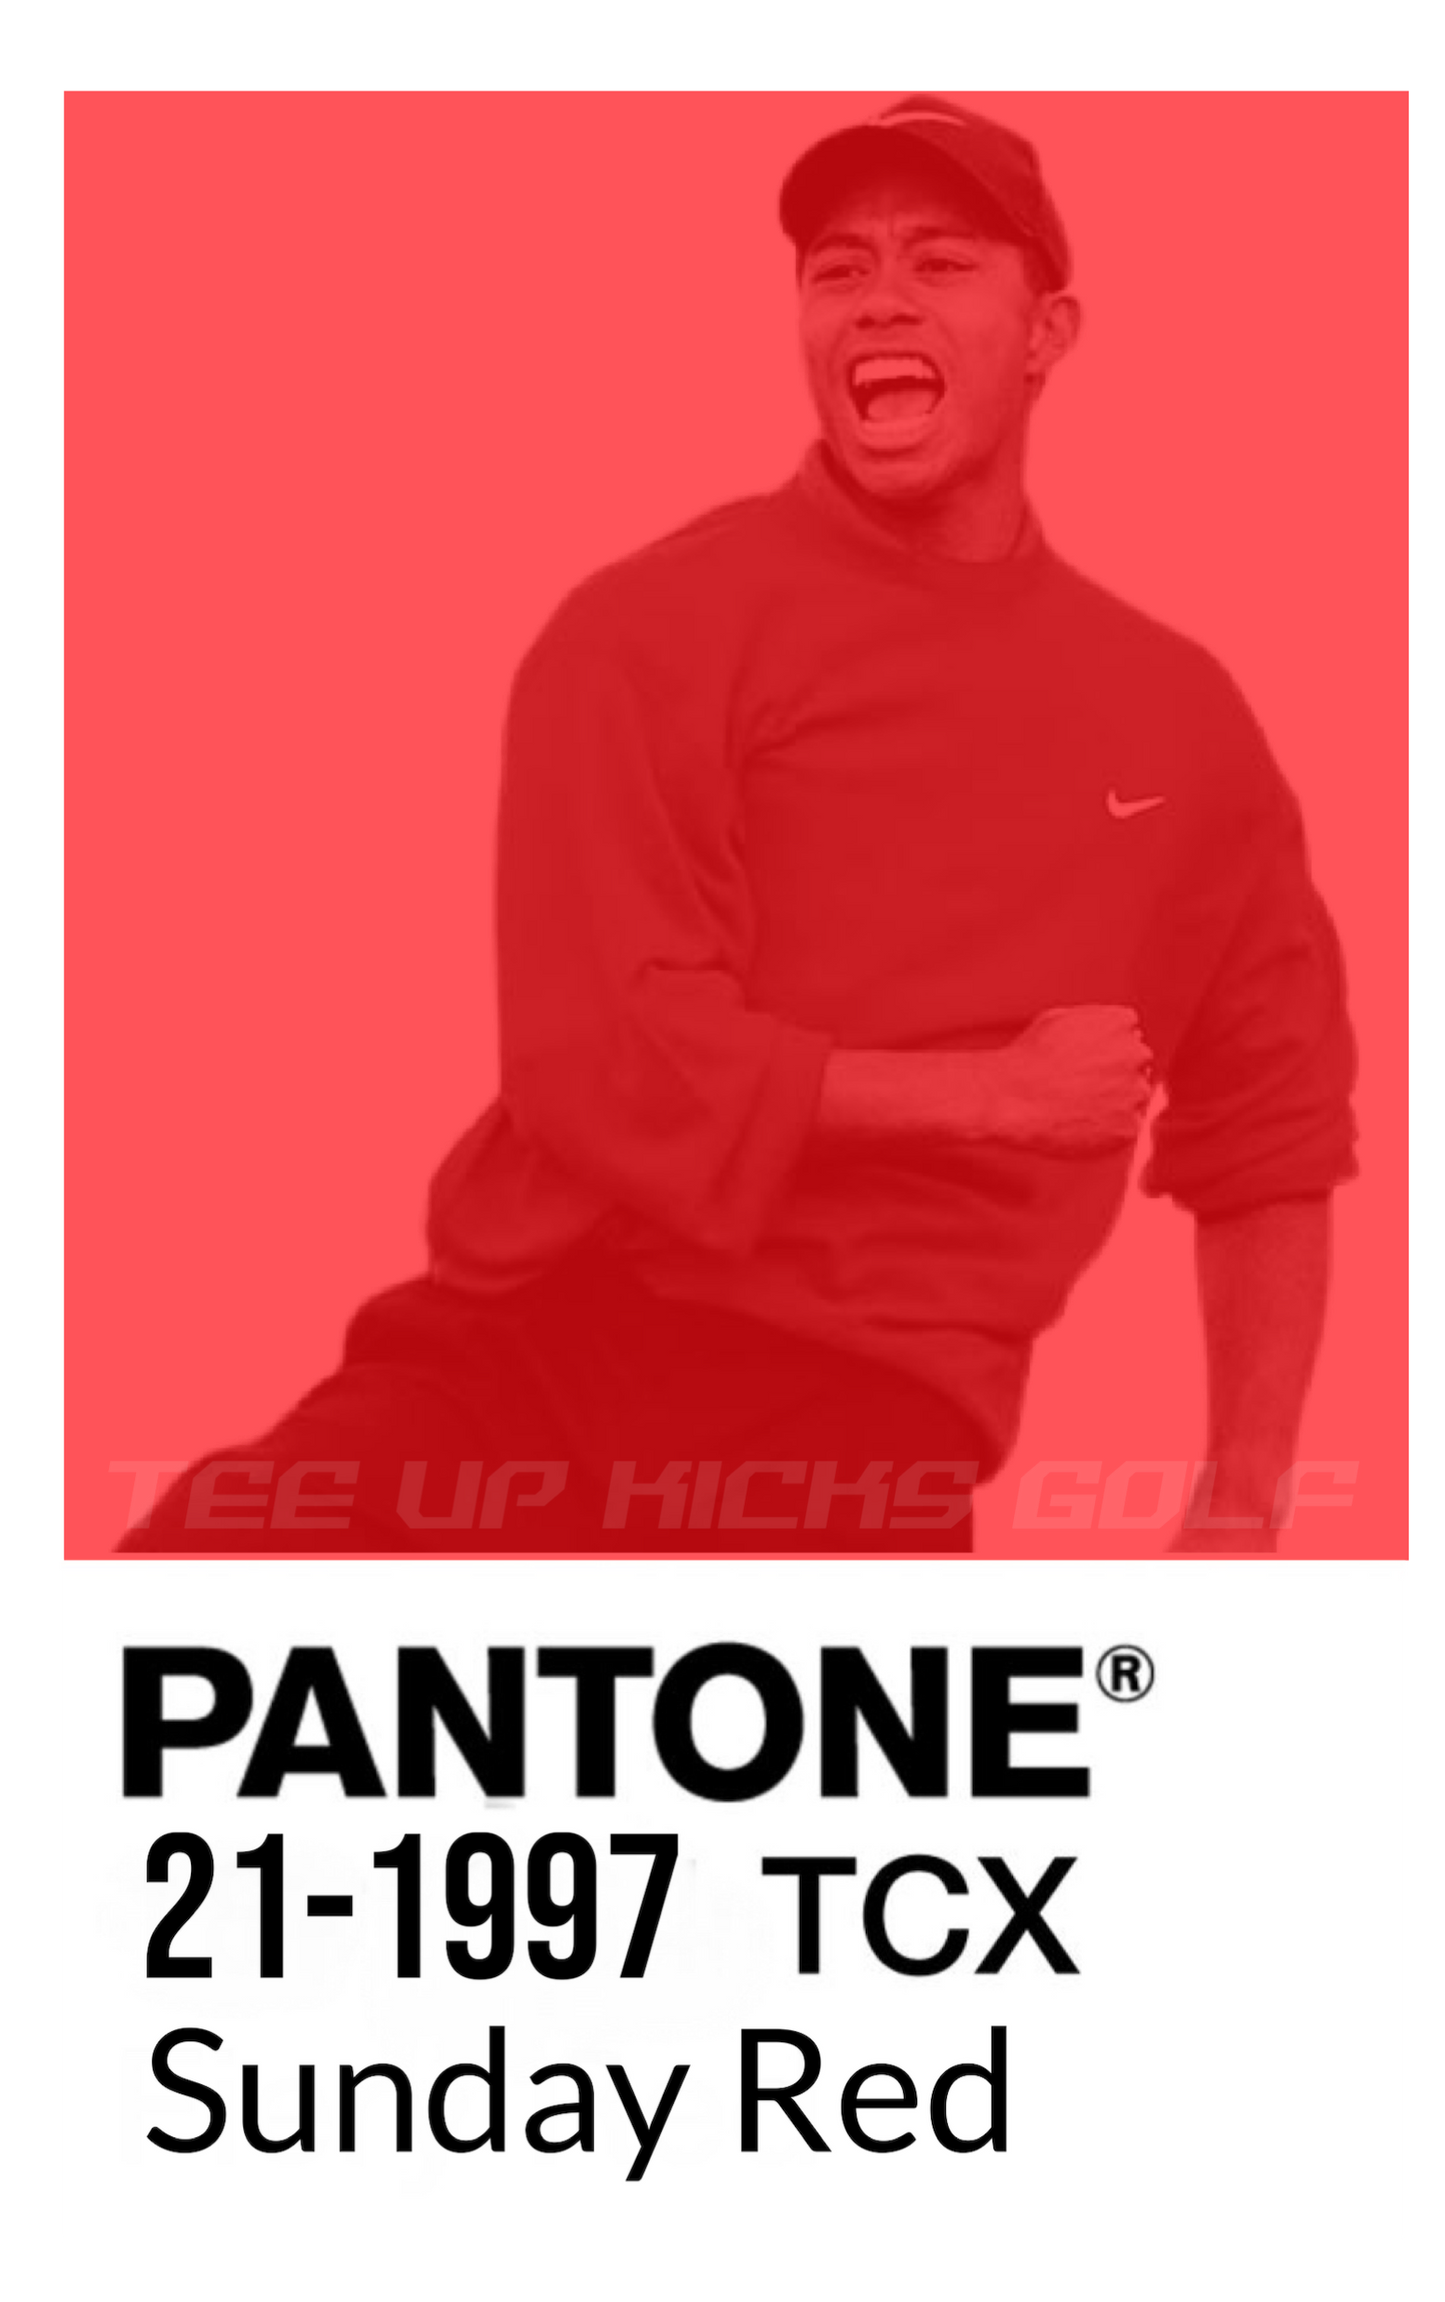 PANTONE “SUNDAY RED” - BONE/WHITE/RED